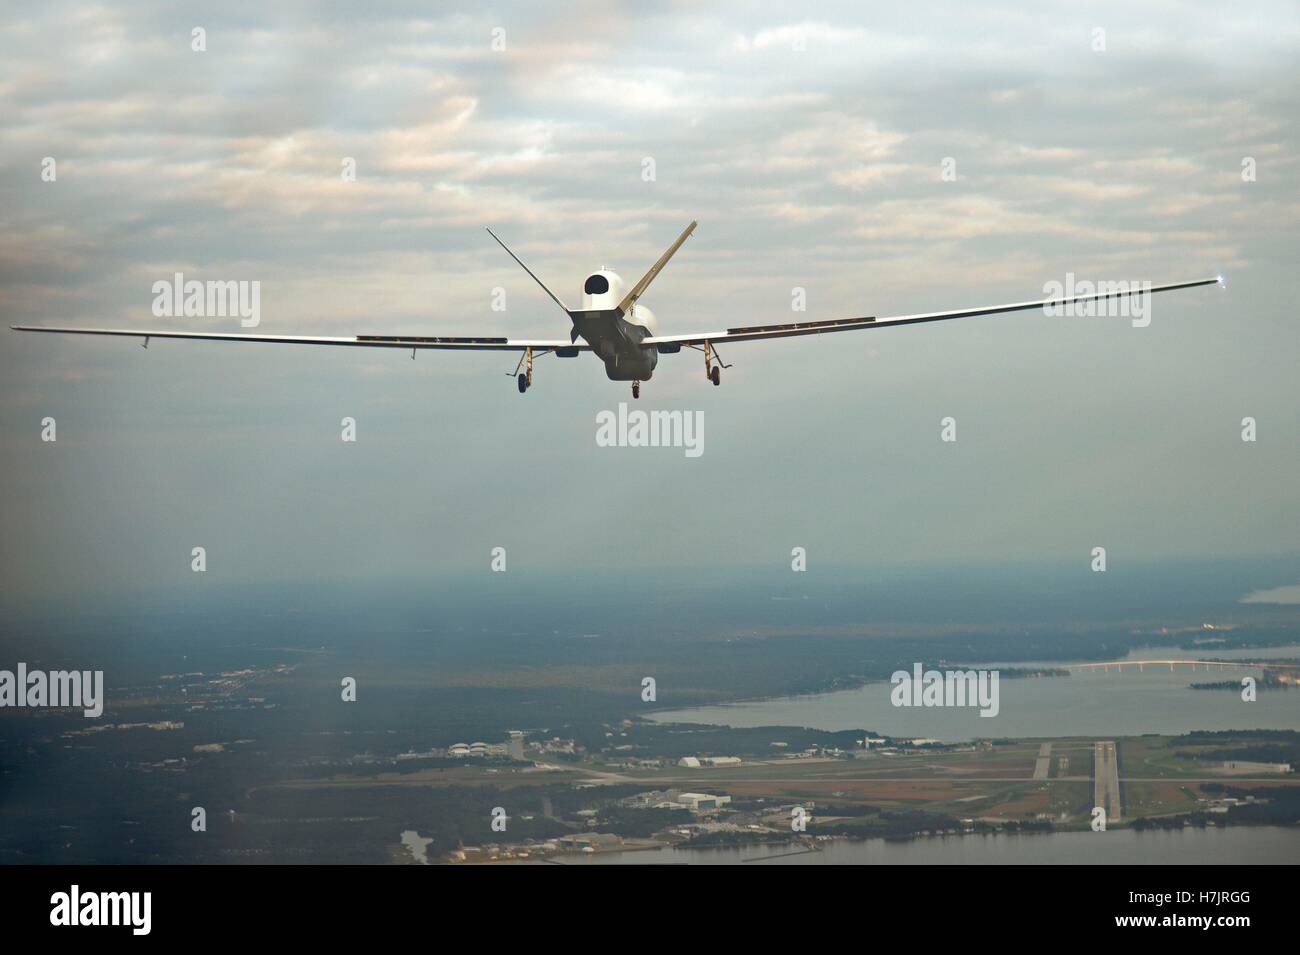 El MQ-4C Triton aviones no tripulados se aproxima a la Estación Aeronaval Patuxent River después de completar su primer vuelo de cross-country de California el 18 de septiembre de 2014 en Maryland. Foto de stock